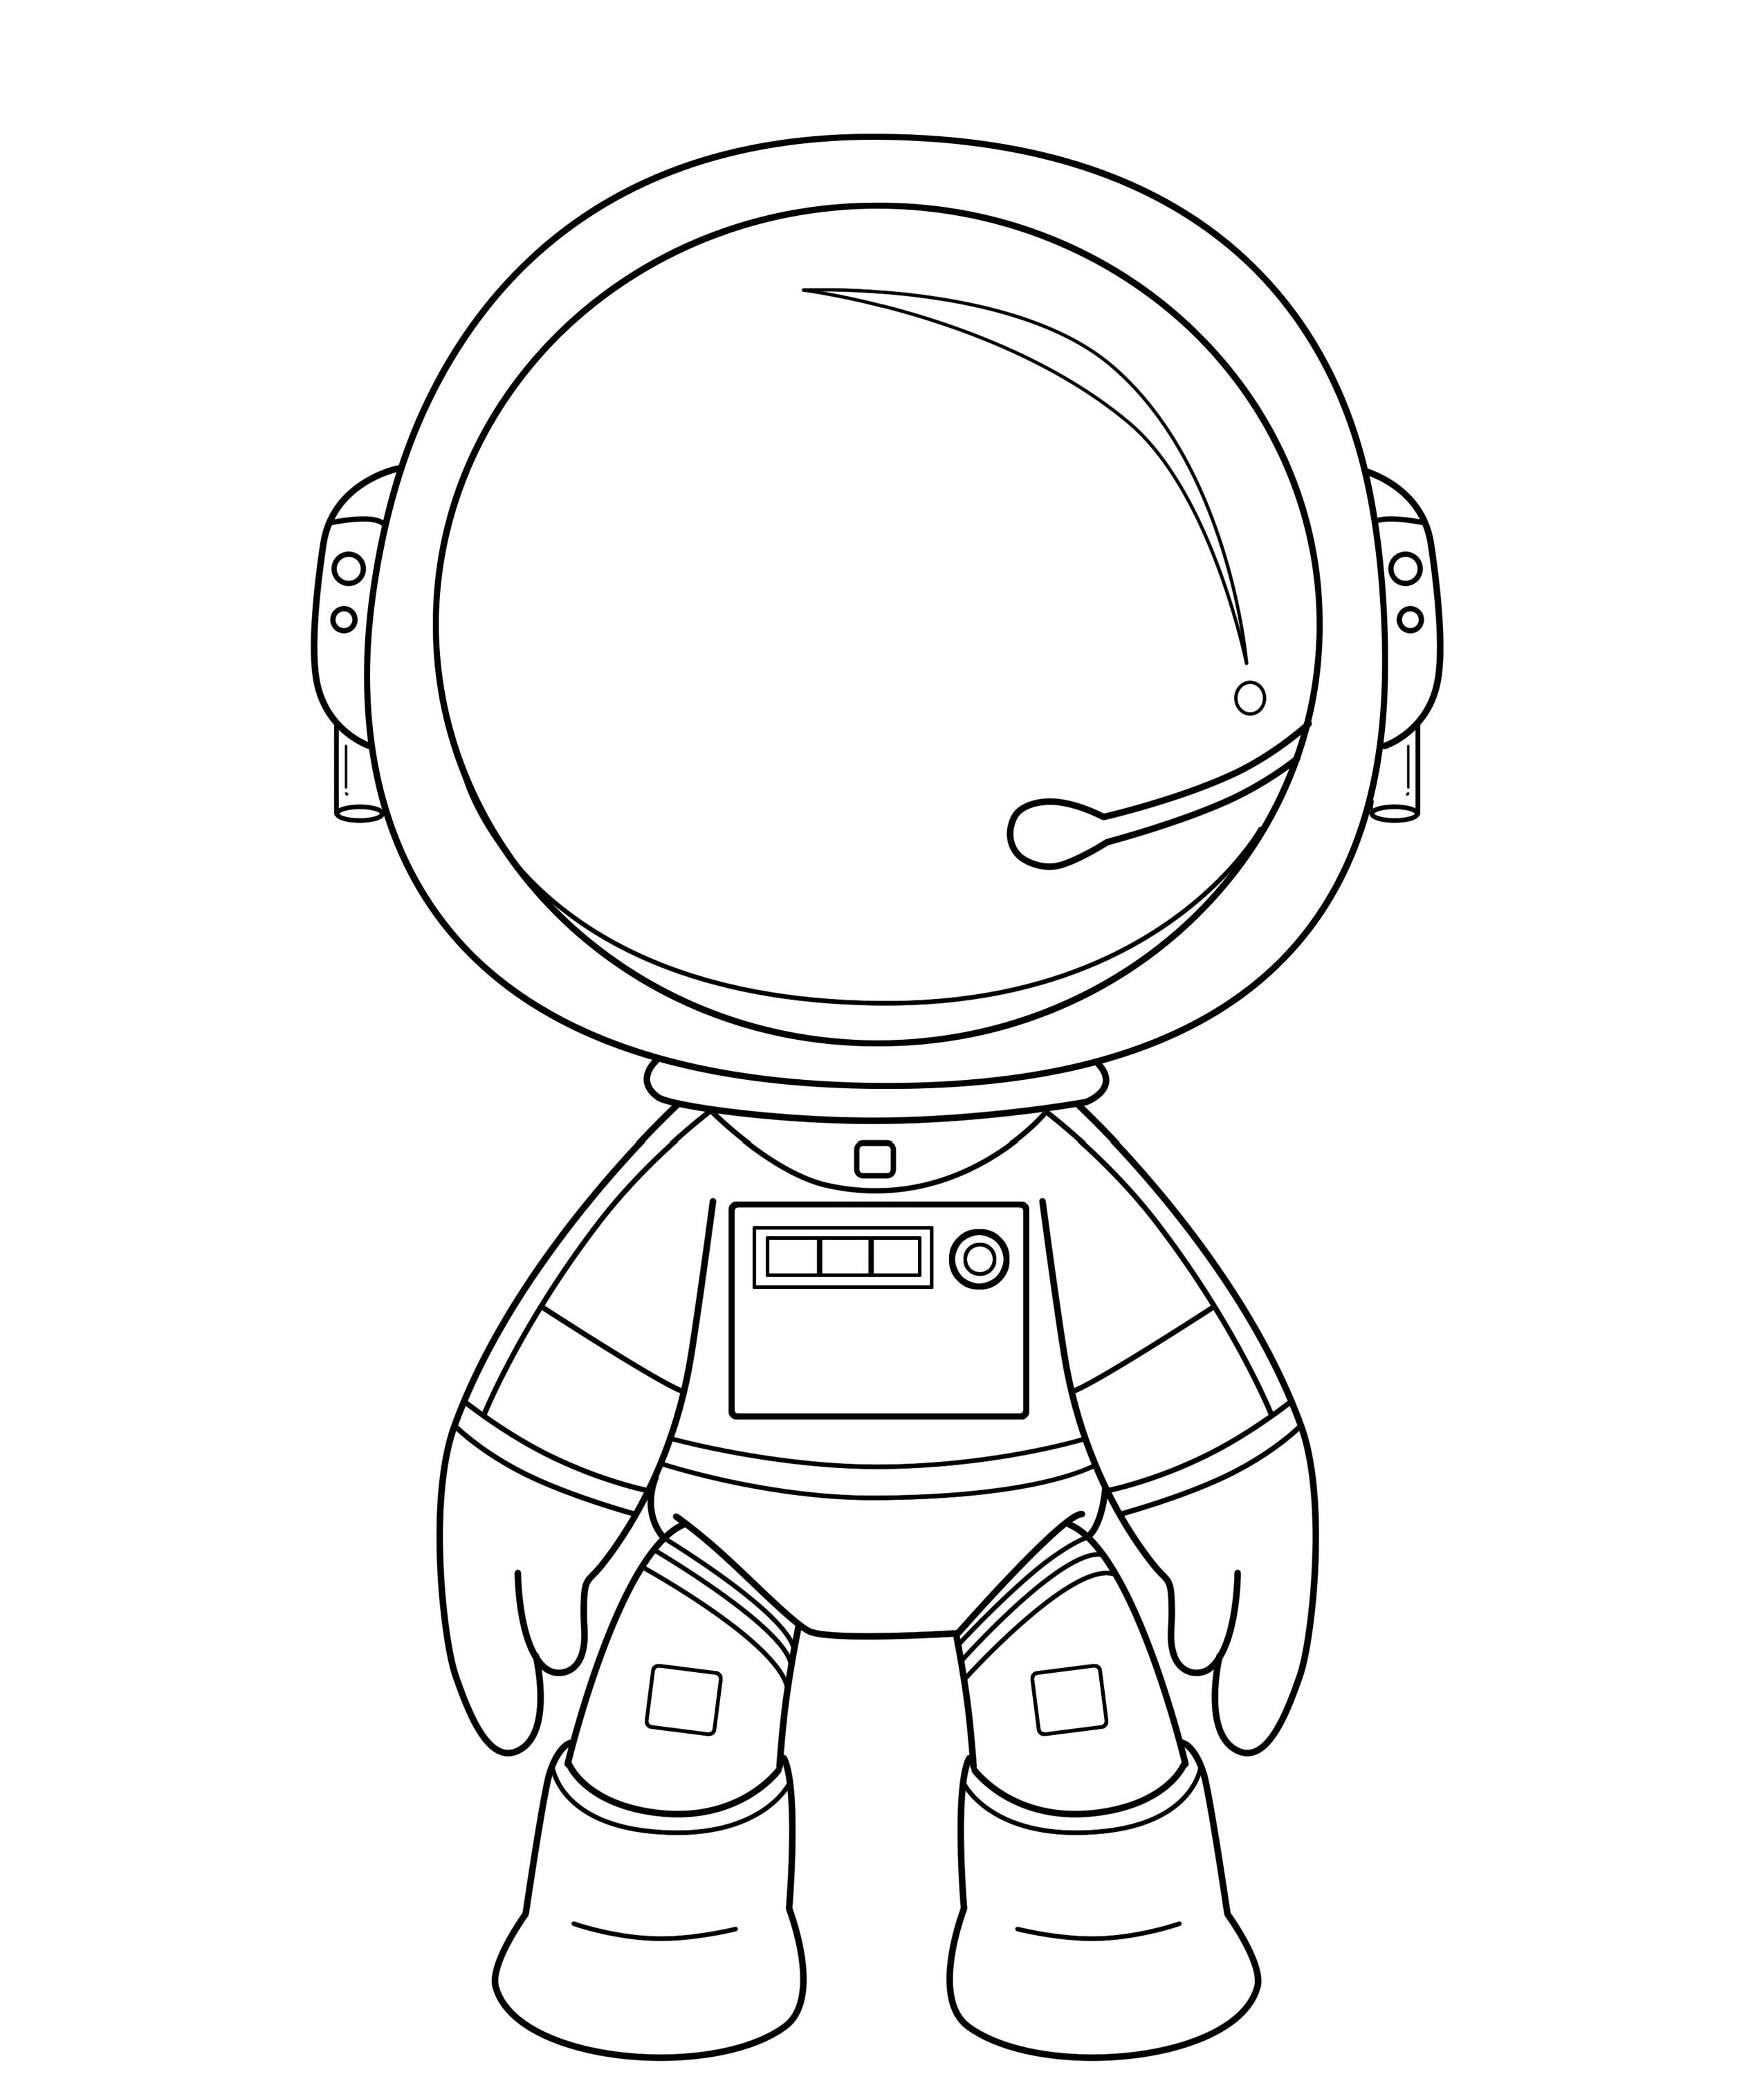 Шаблон шлема космонавта для распечатки. Космонавт трафарет. Космонавт раскраска. Космонавт раскраска для детей. Космонавт раскраска для малышей.